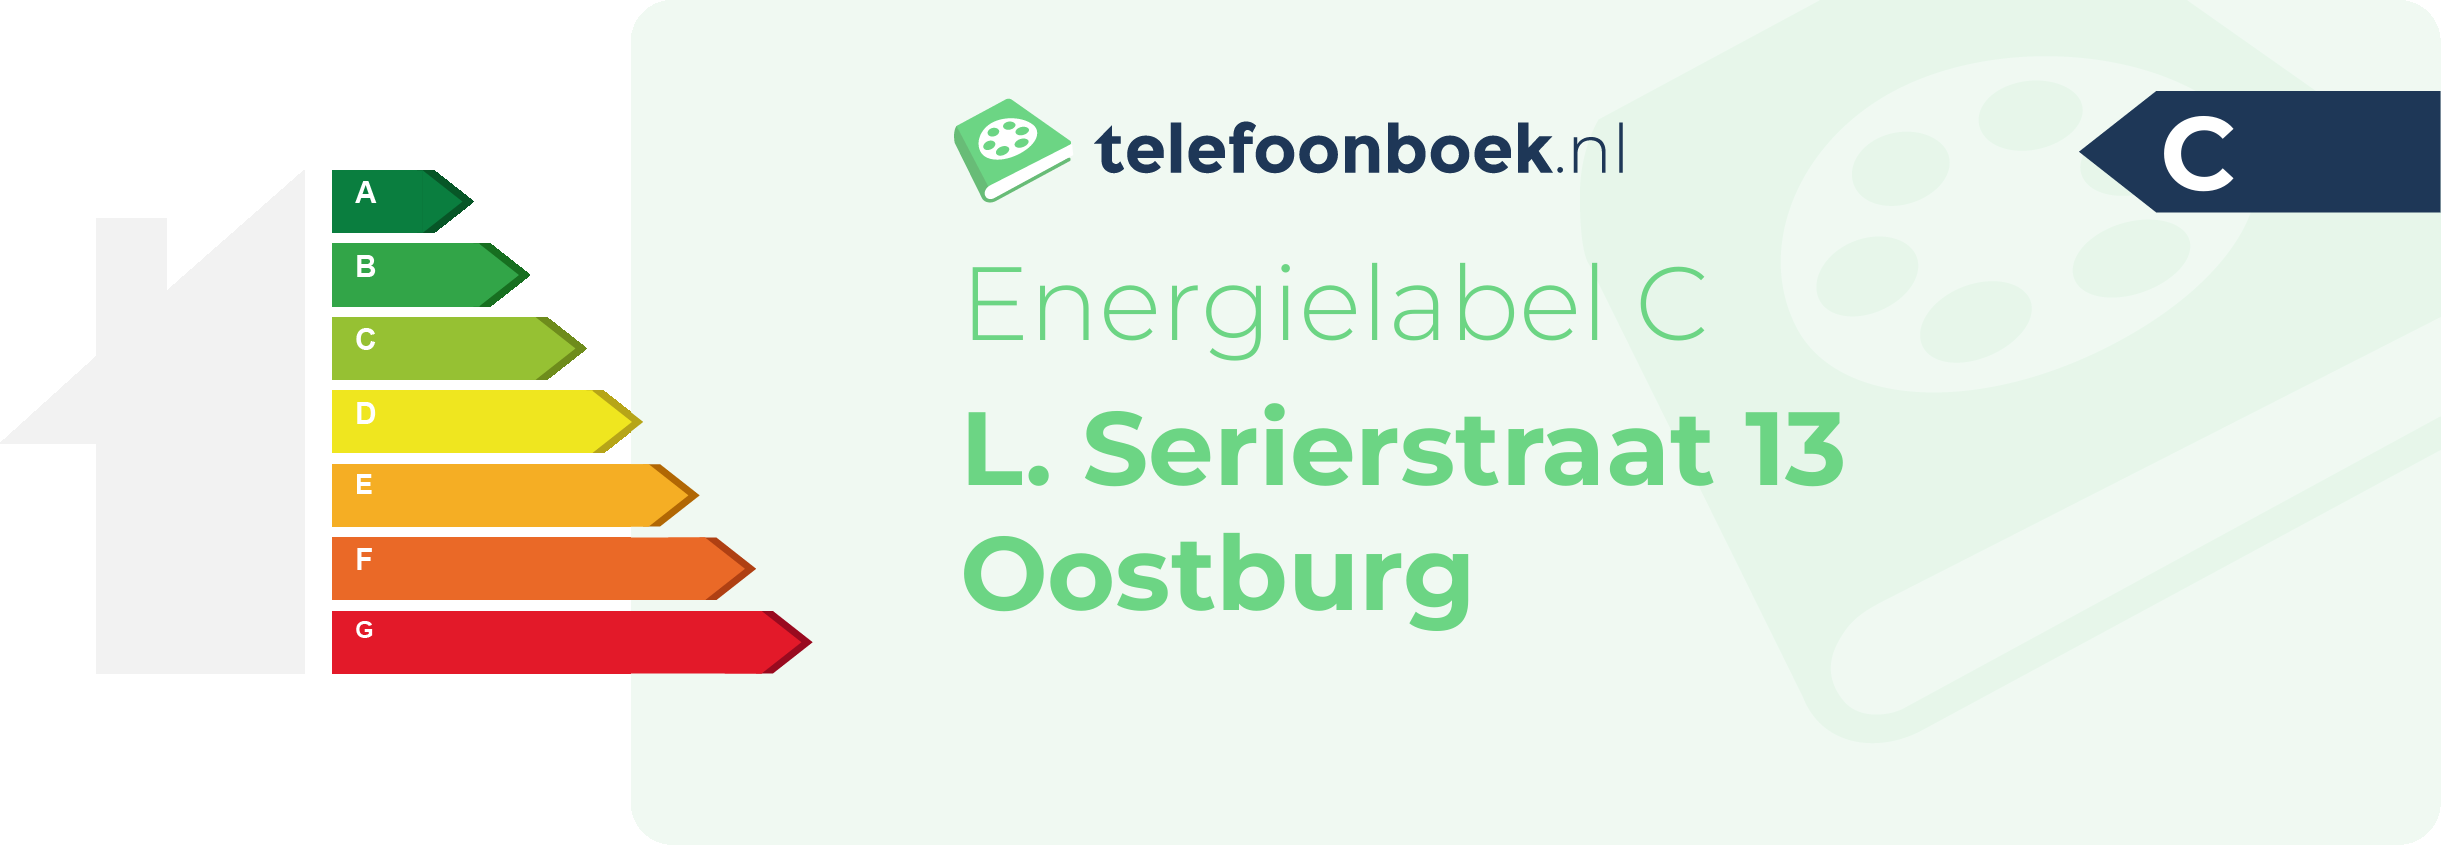 Energielabel L. Serierstraat 13 Oostburg